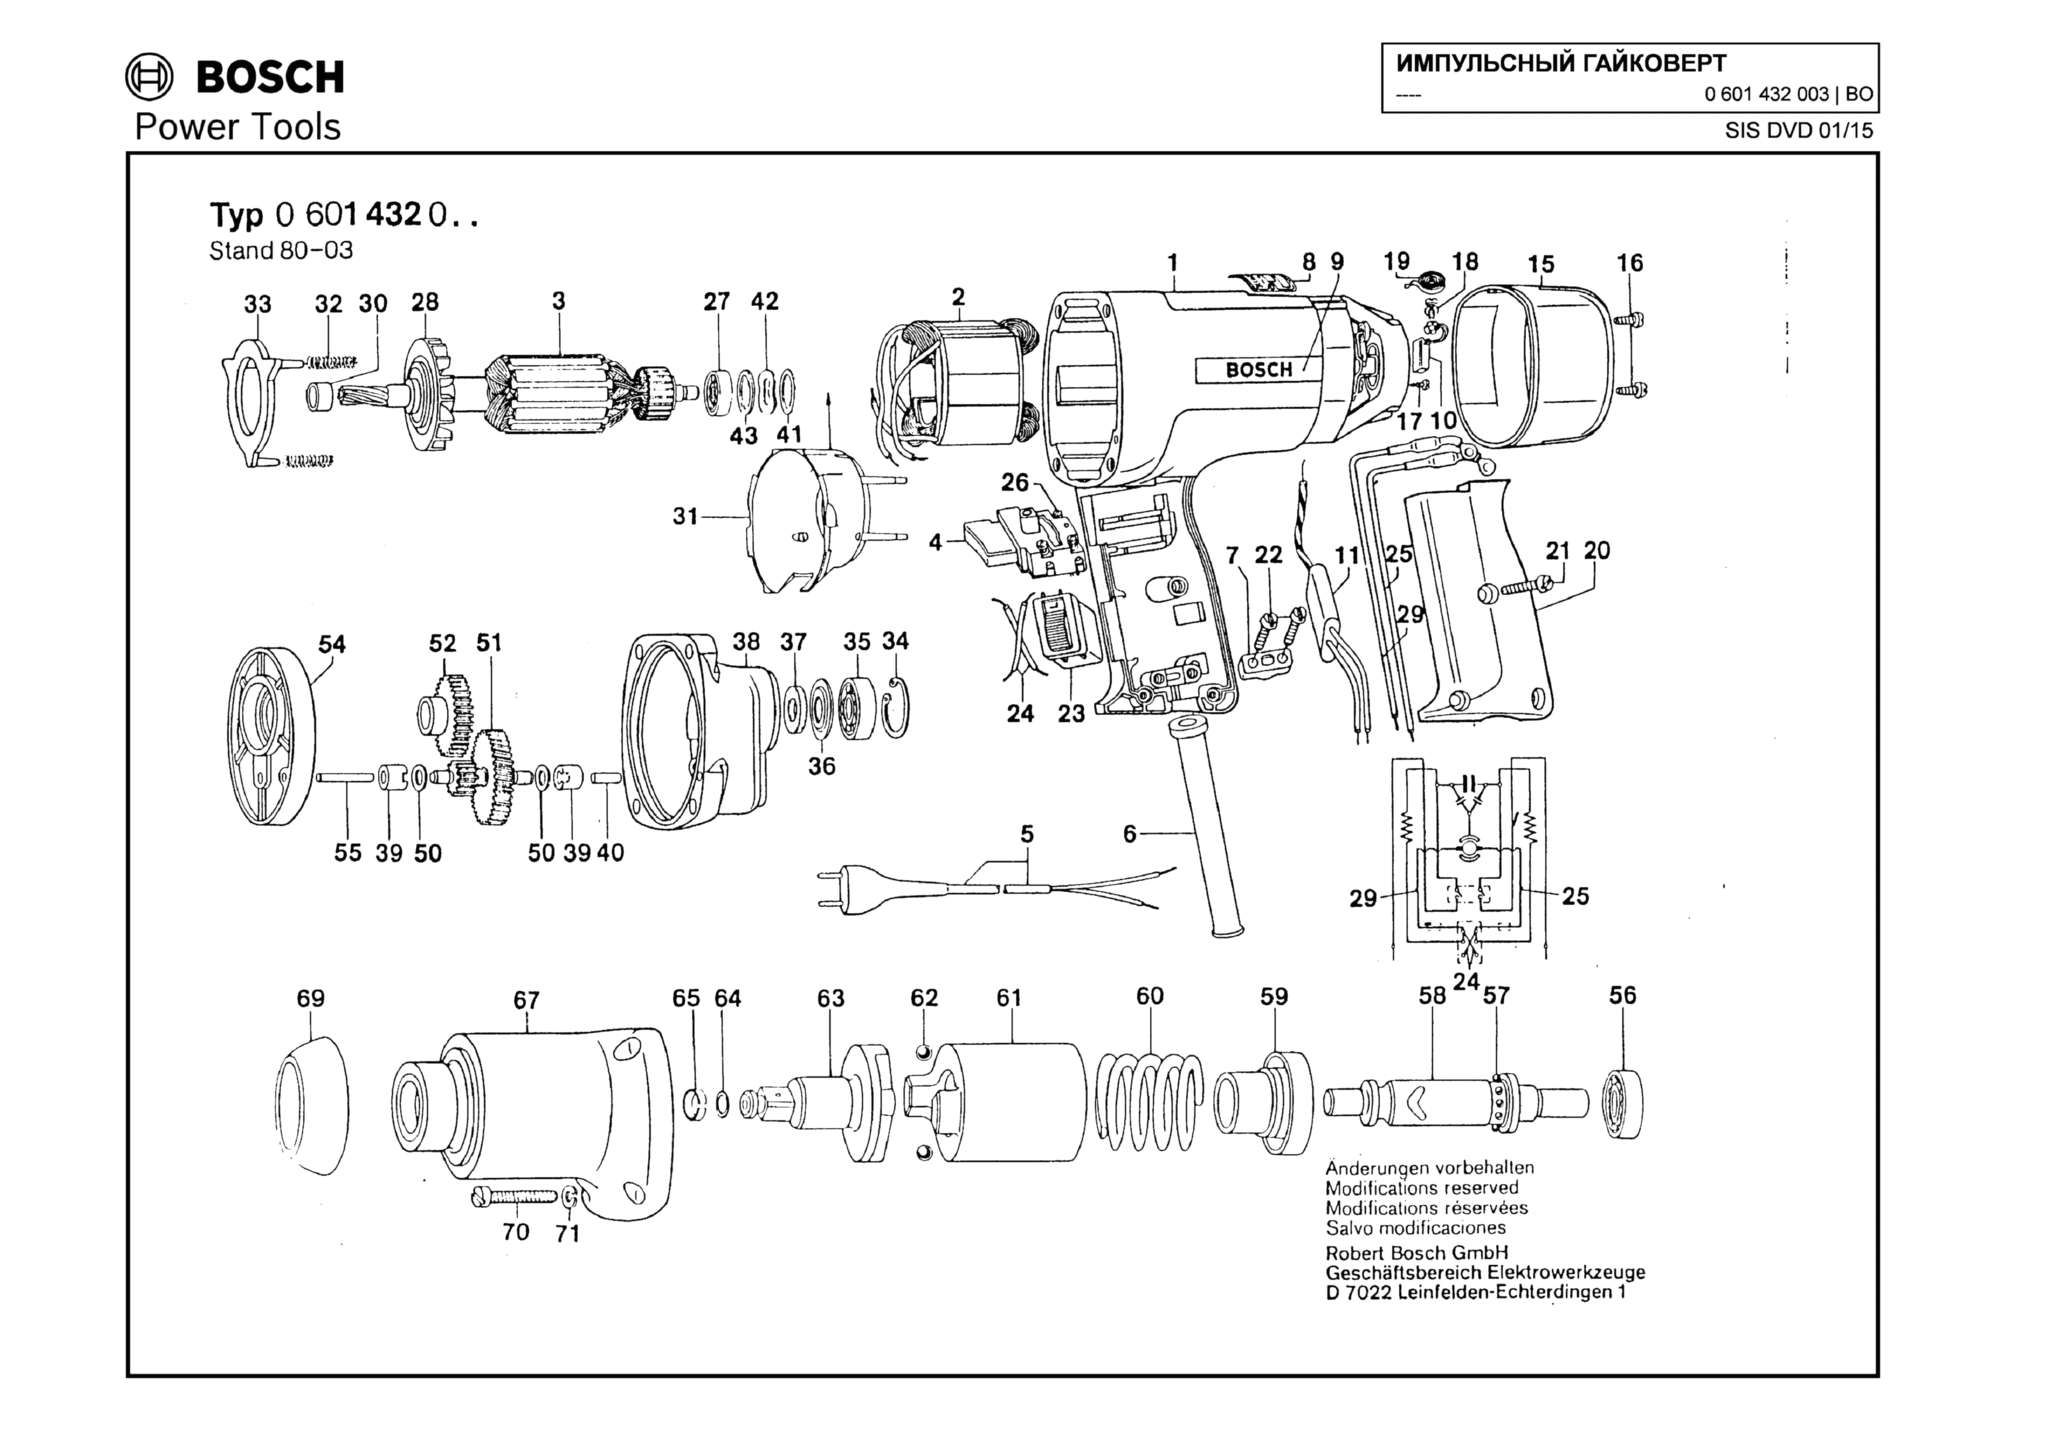 Запчасти, схема и деталировка Bosch (ТИП 0601432003)